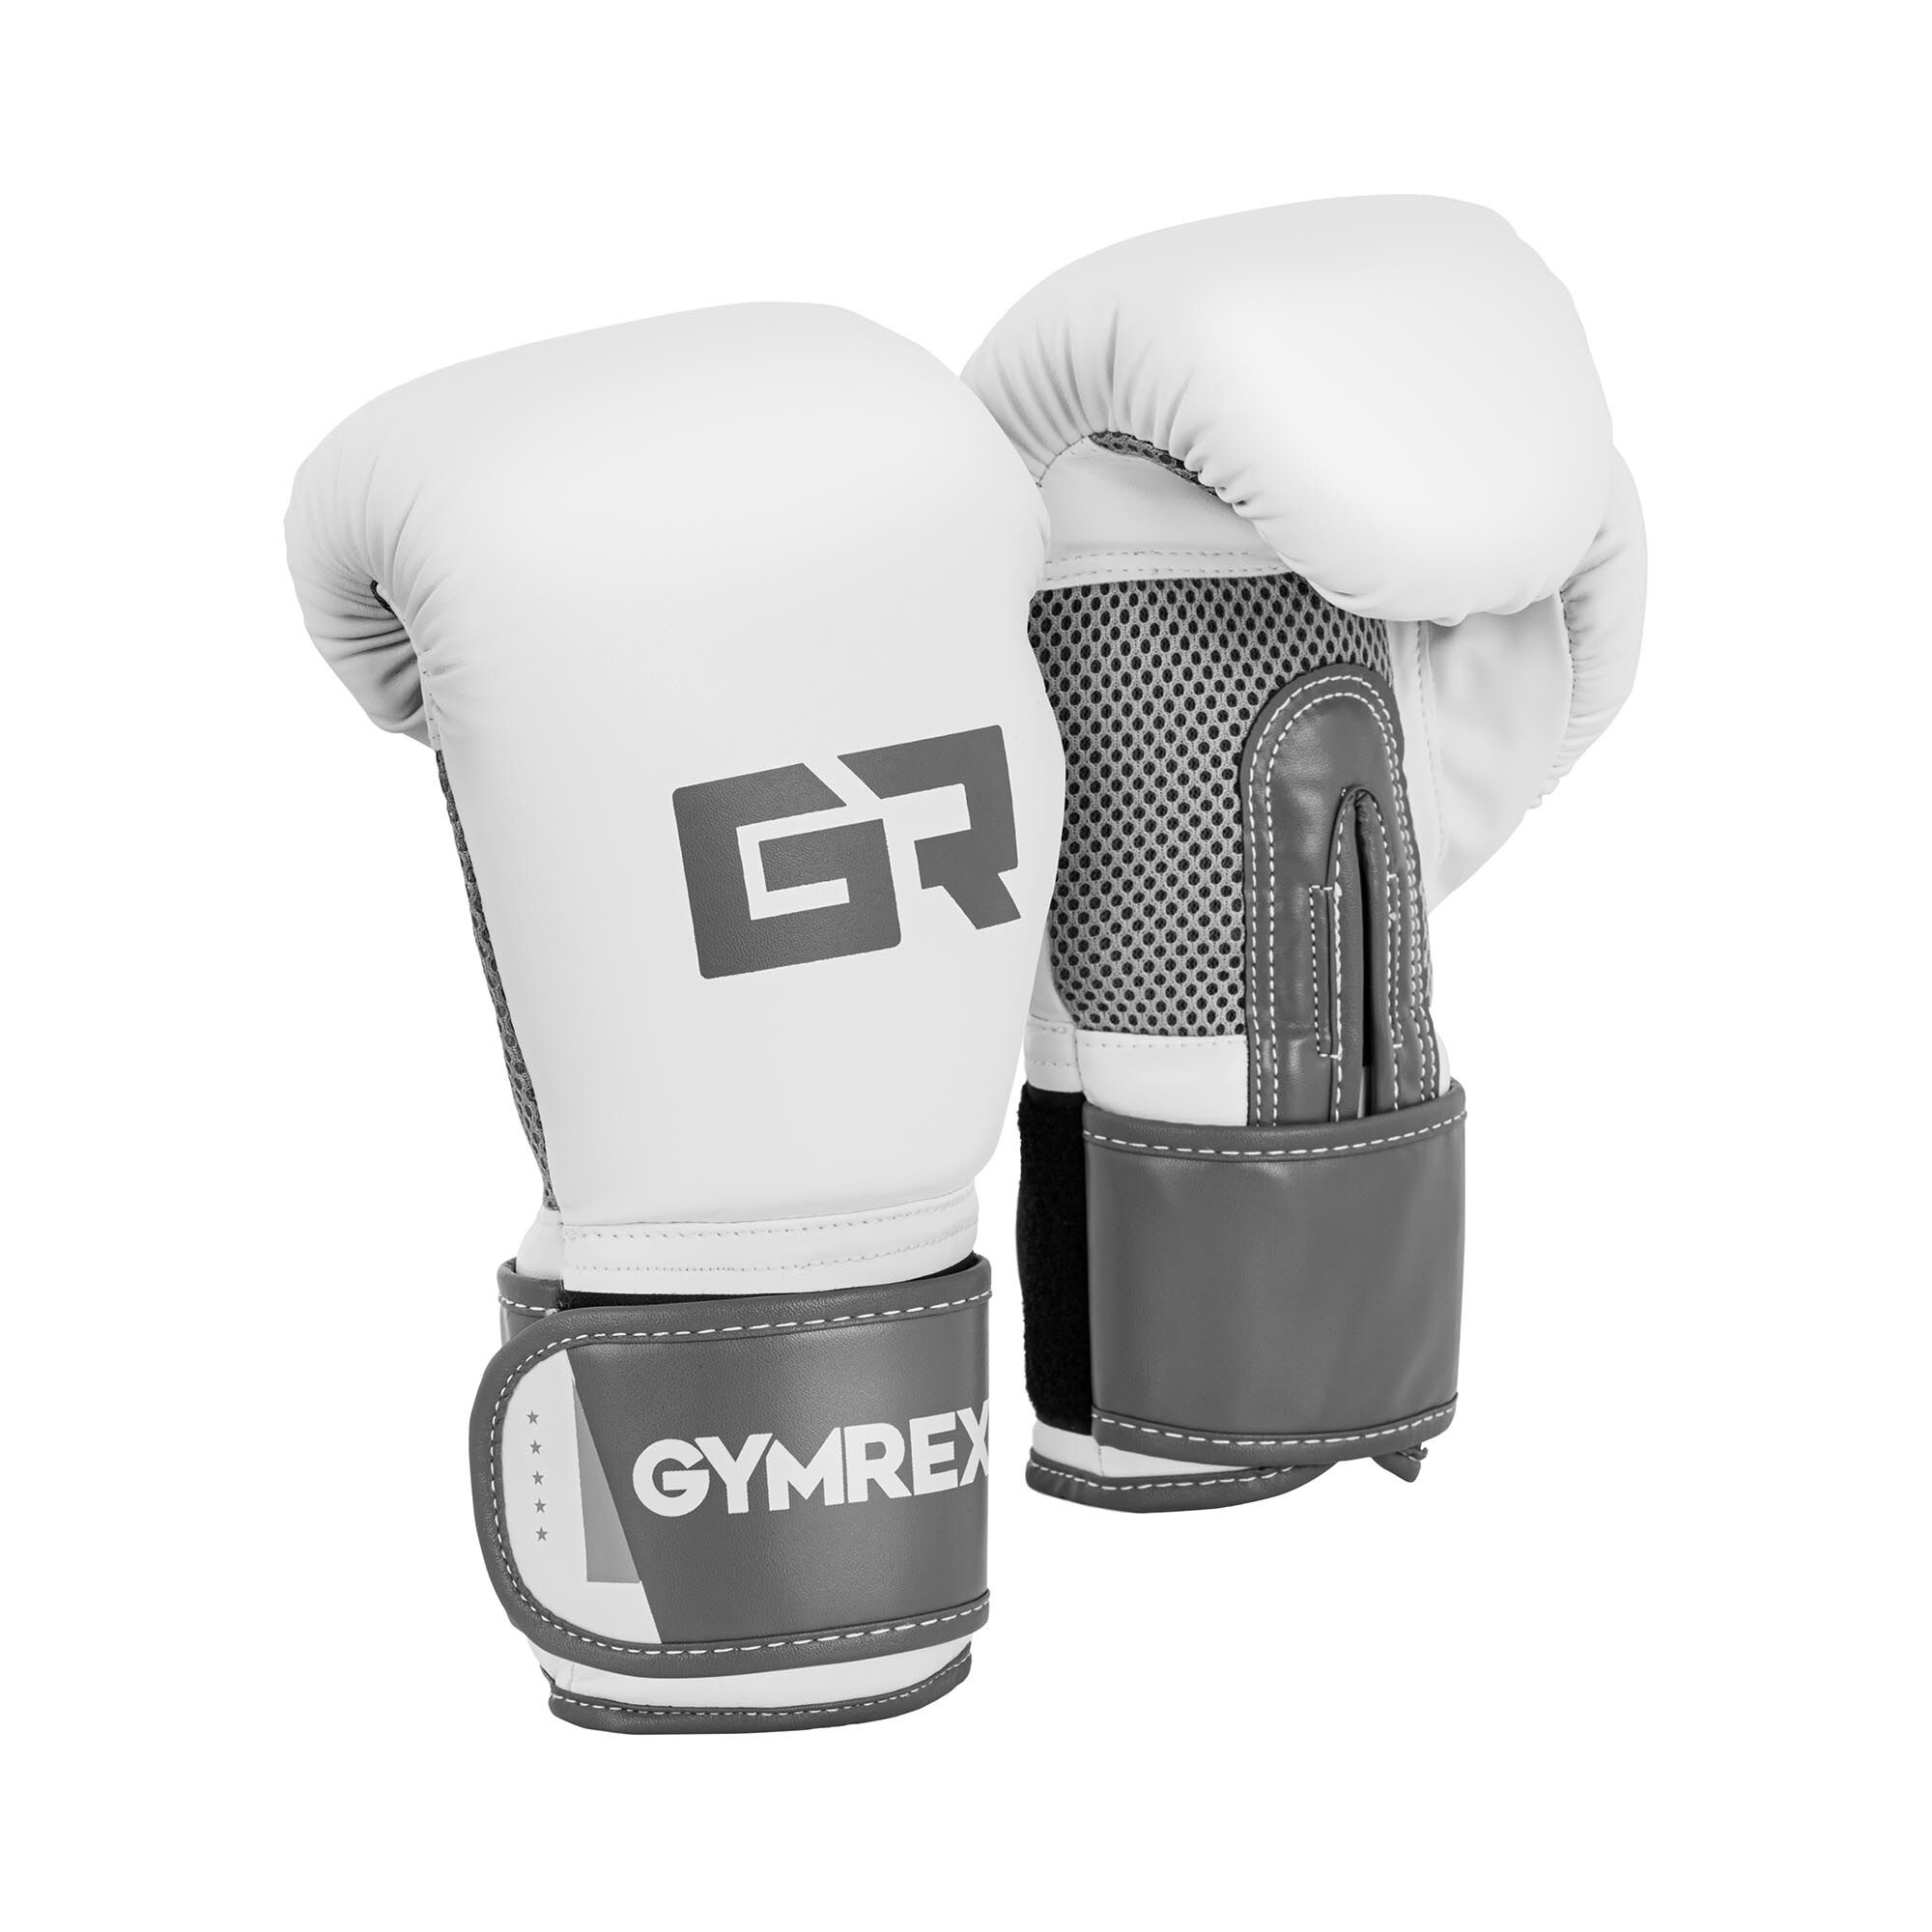 Gymrex Nyrkkeilyhanskat - 8 oz - mesh-sisus - valkoinen ja vaaleanharmaa/metalli